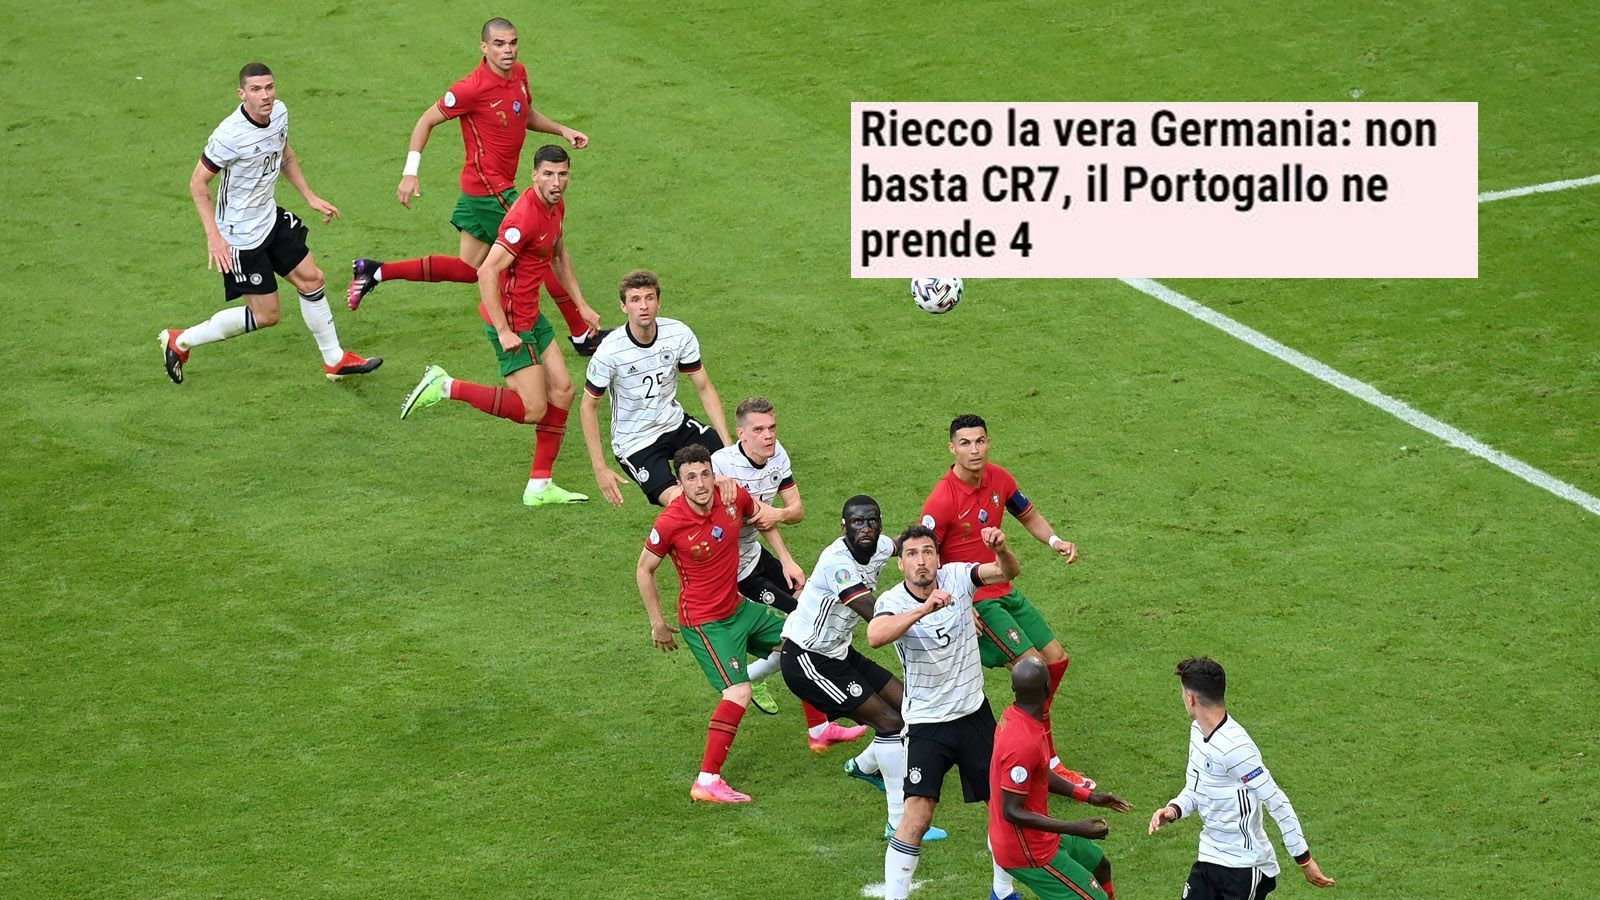 
                <strong>Gazzetta dello Sport (Italien)</strong><br>
                "Das echte Deutschland ist zurück: CR7 reicht nicht, Portugal bekommt vier eingeschenkt. Ronaldo eröffnet den Tanz. Aber dann übernehmen die Deutschen."
              